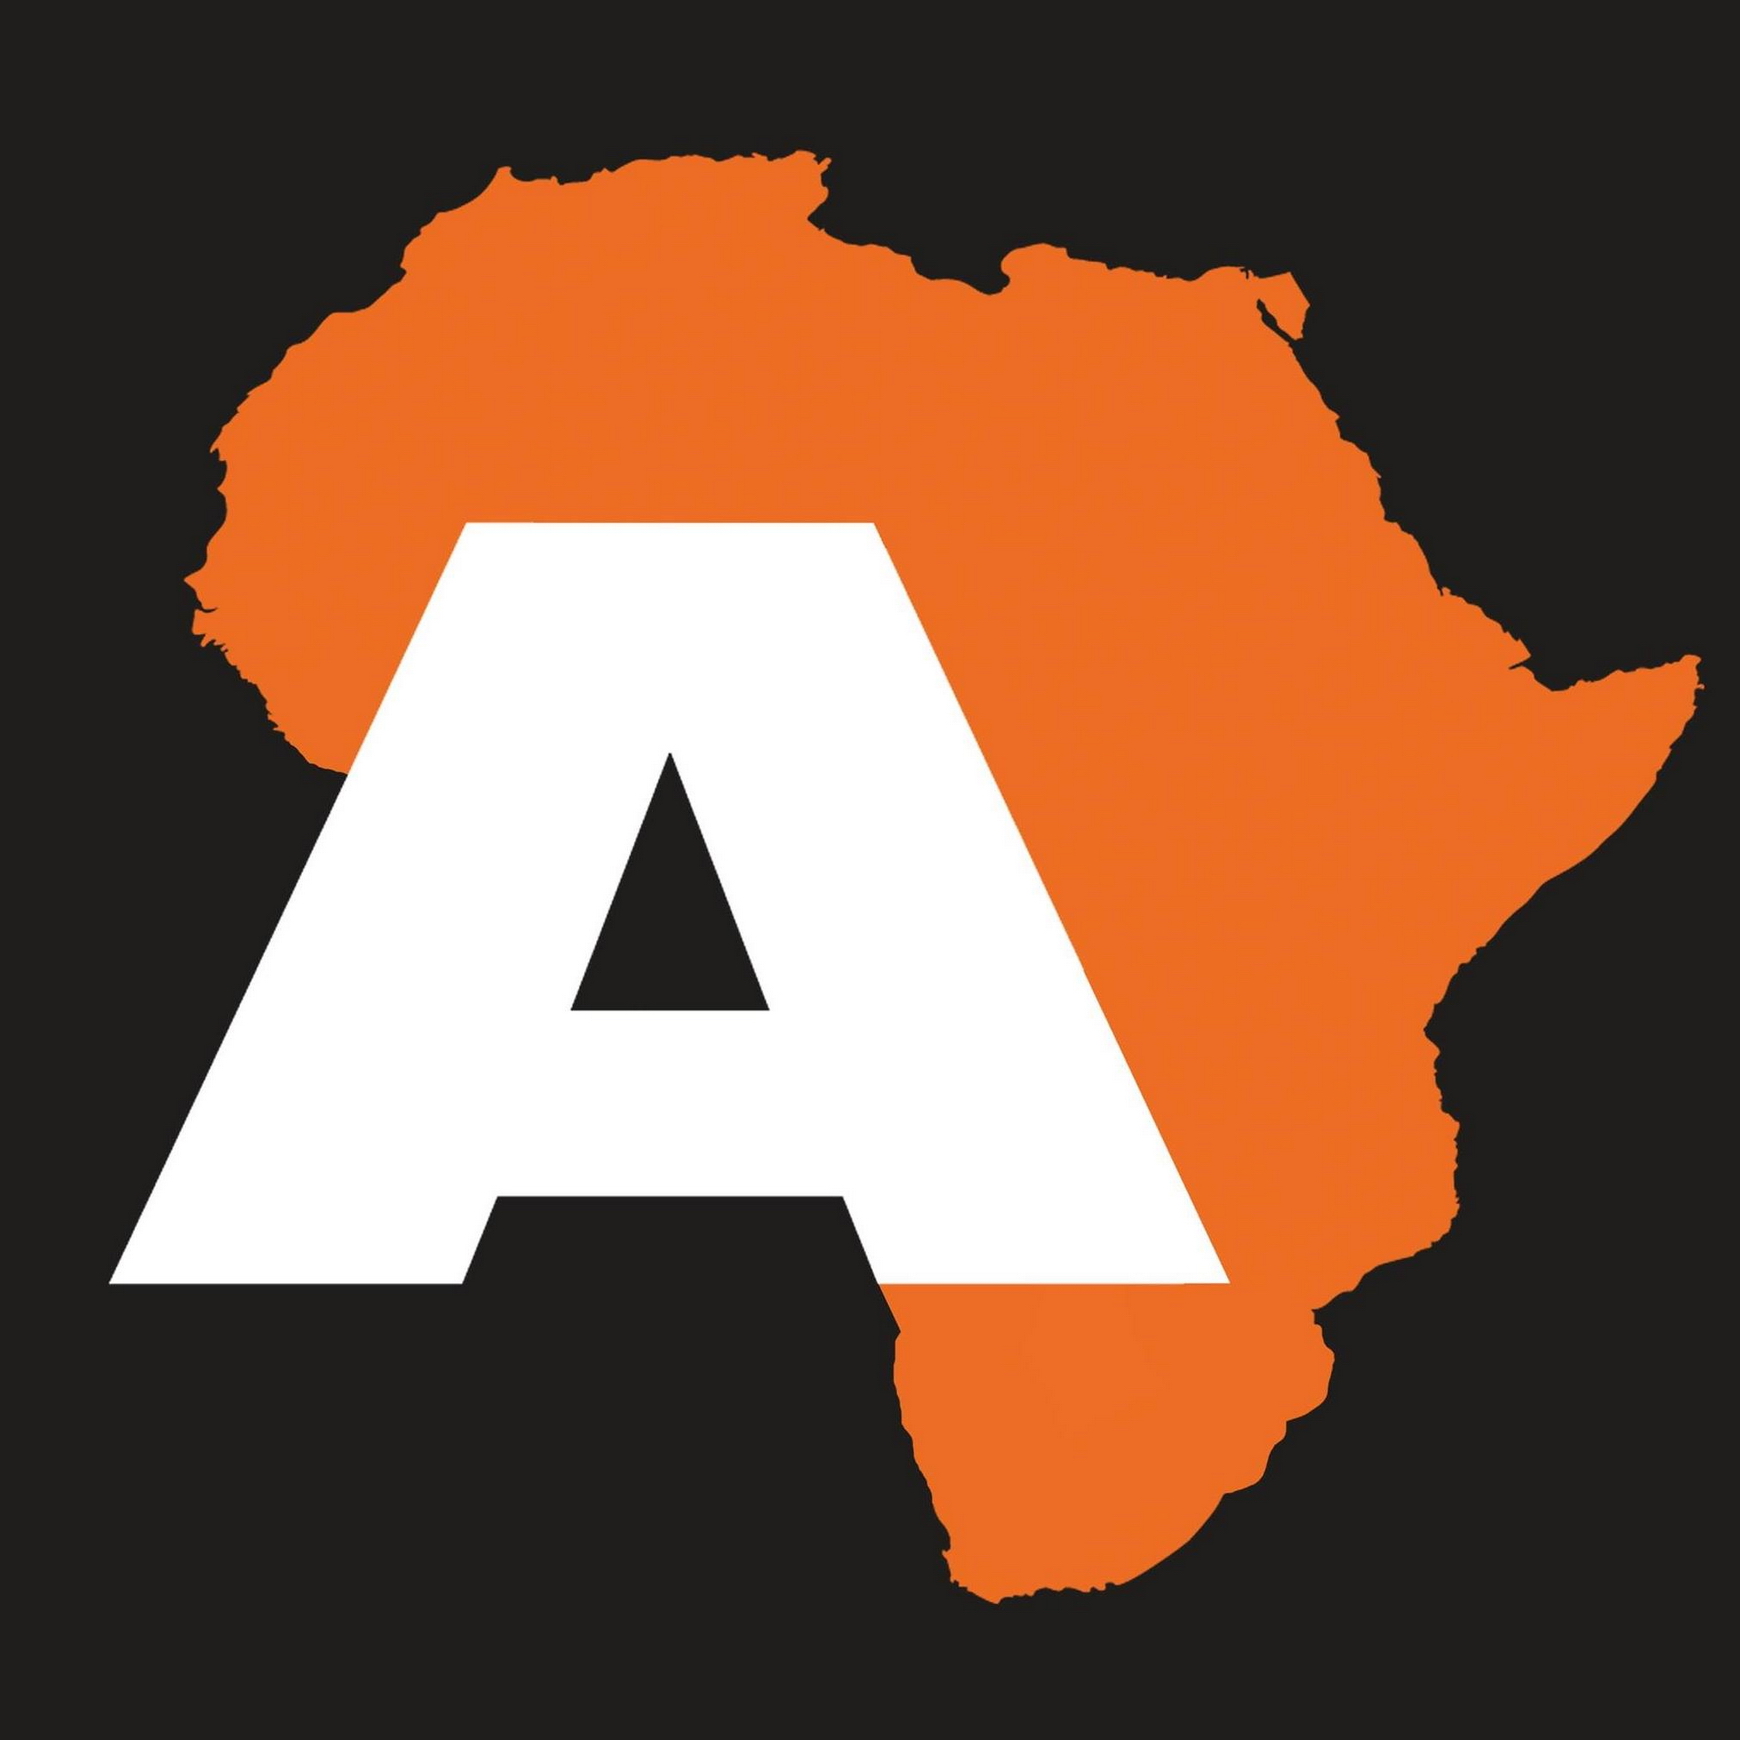 Articoli dal web di letteratura africana, Afrologist